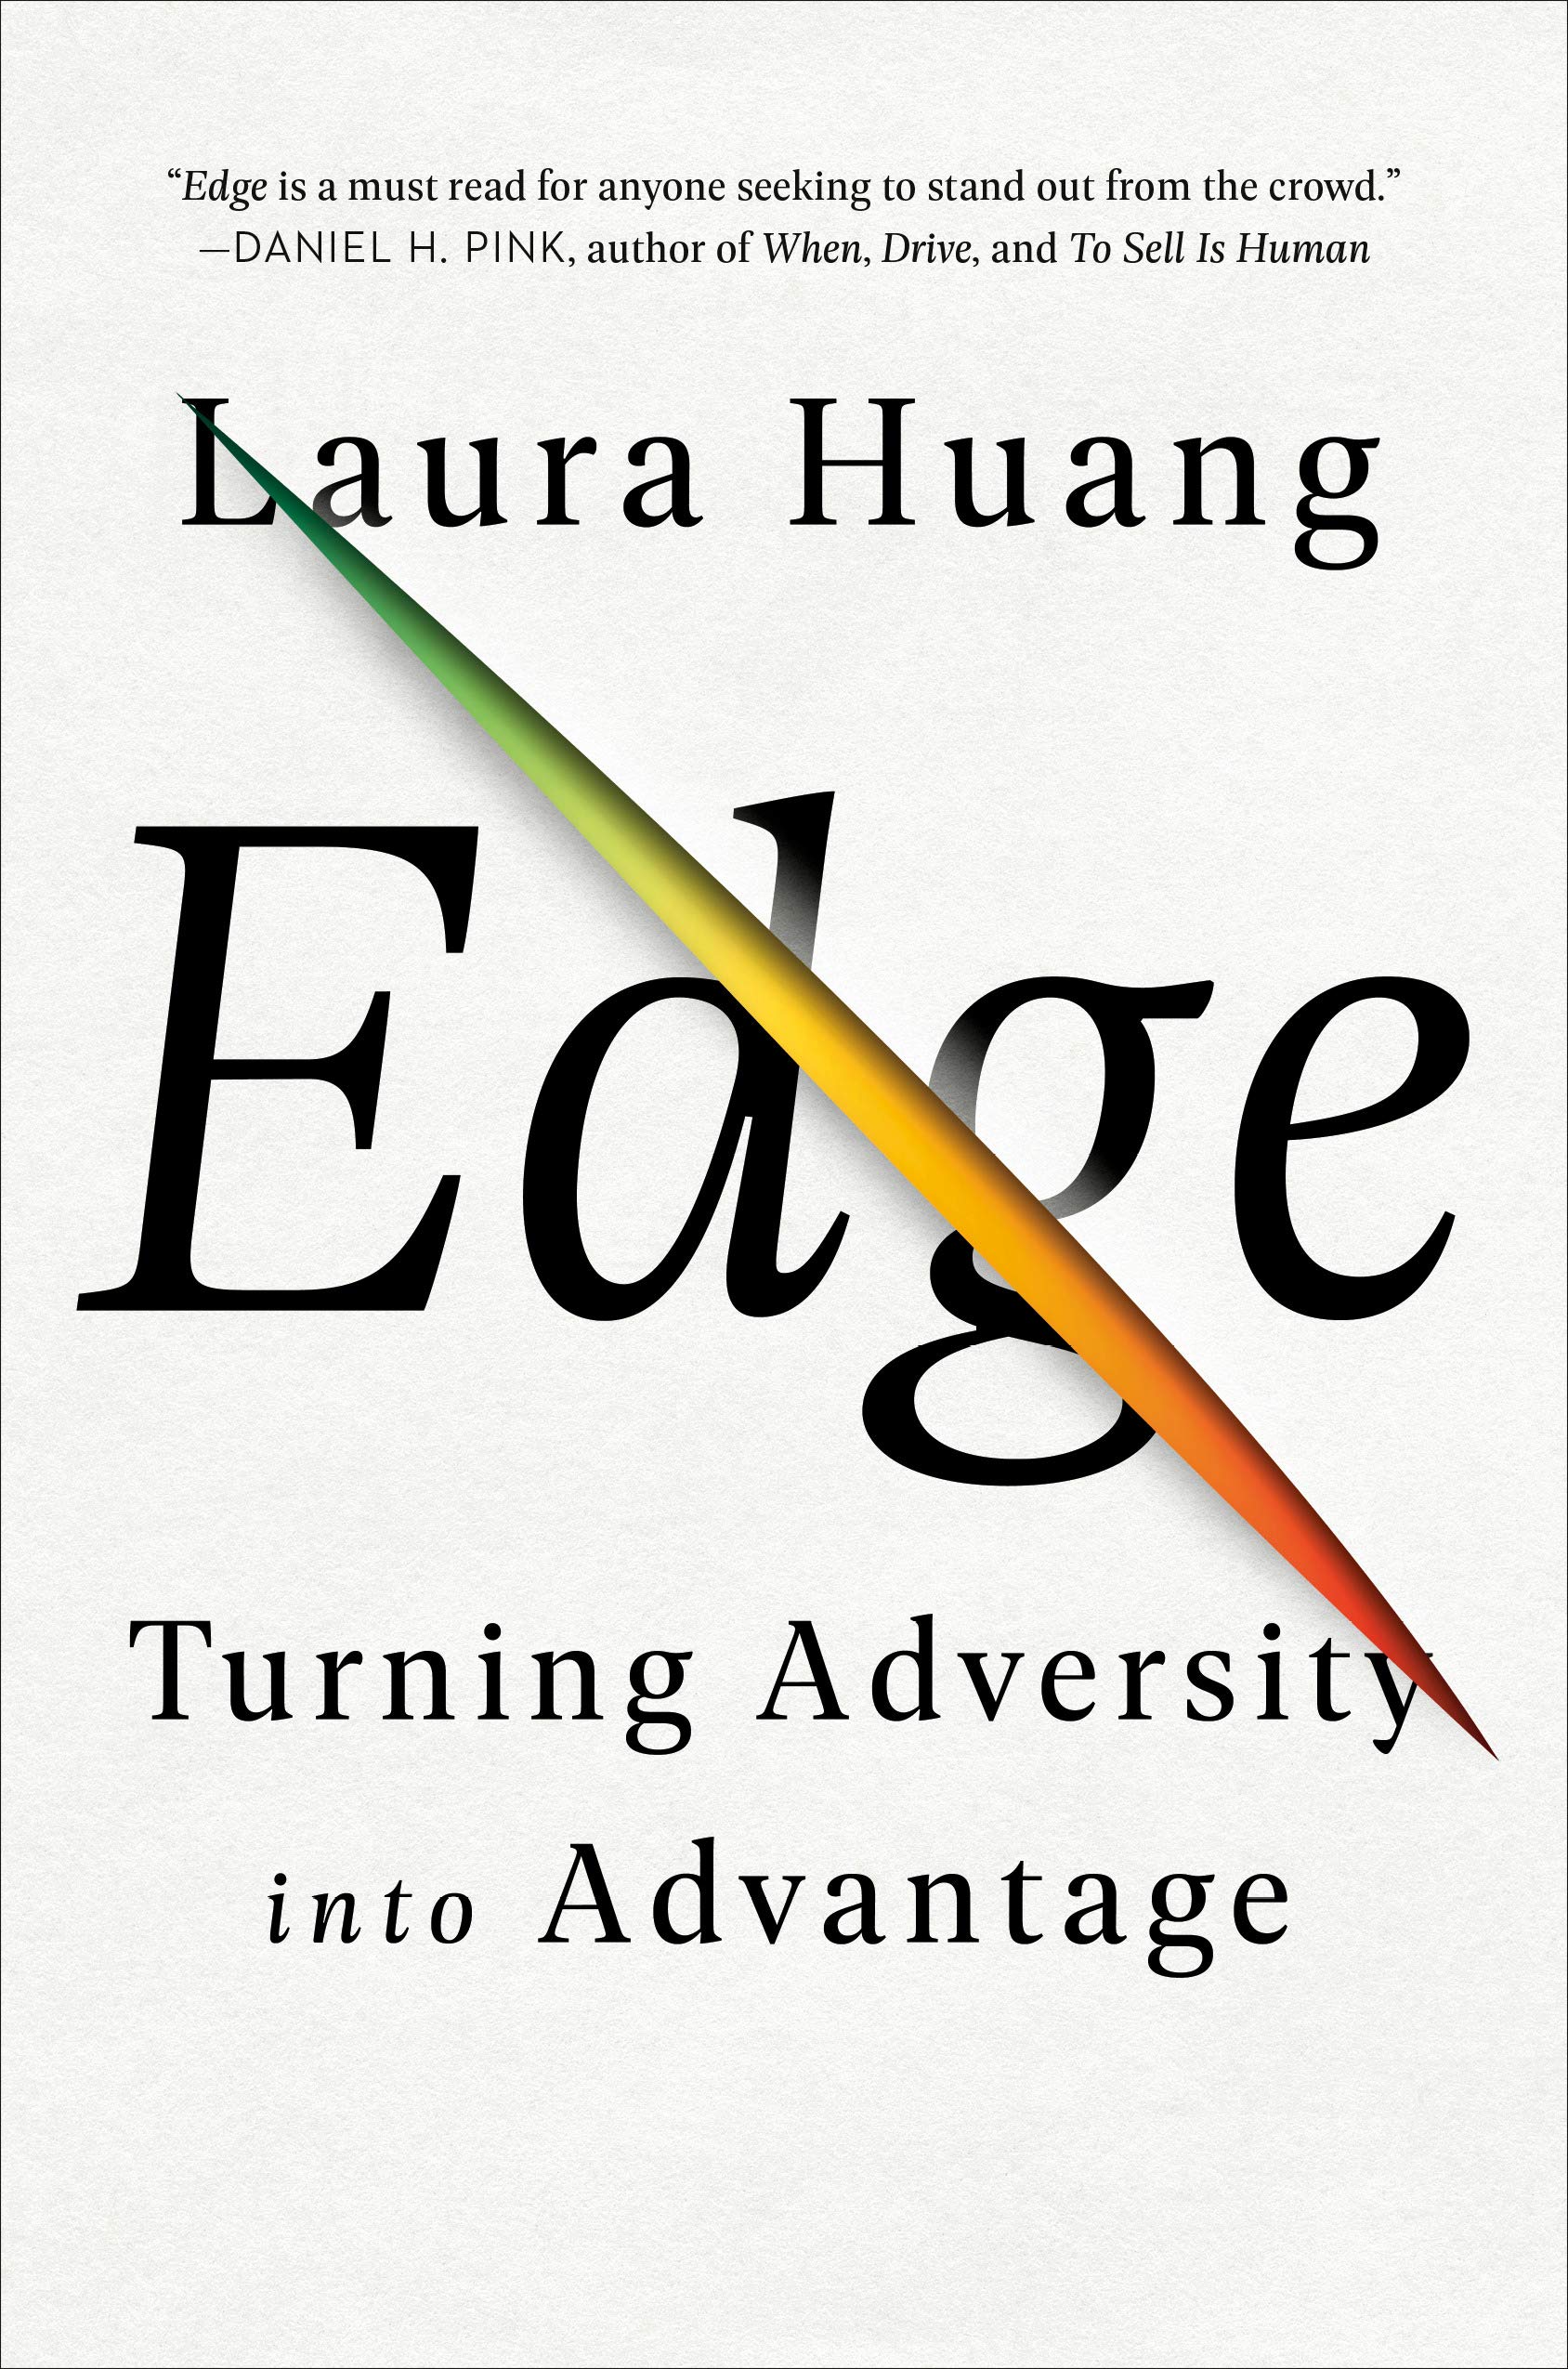 Edge | Laura Huang